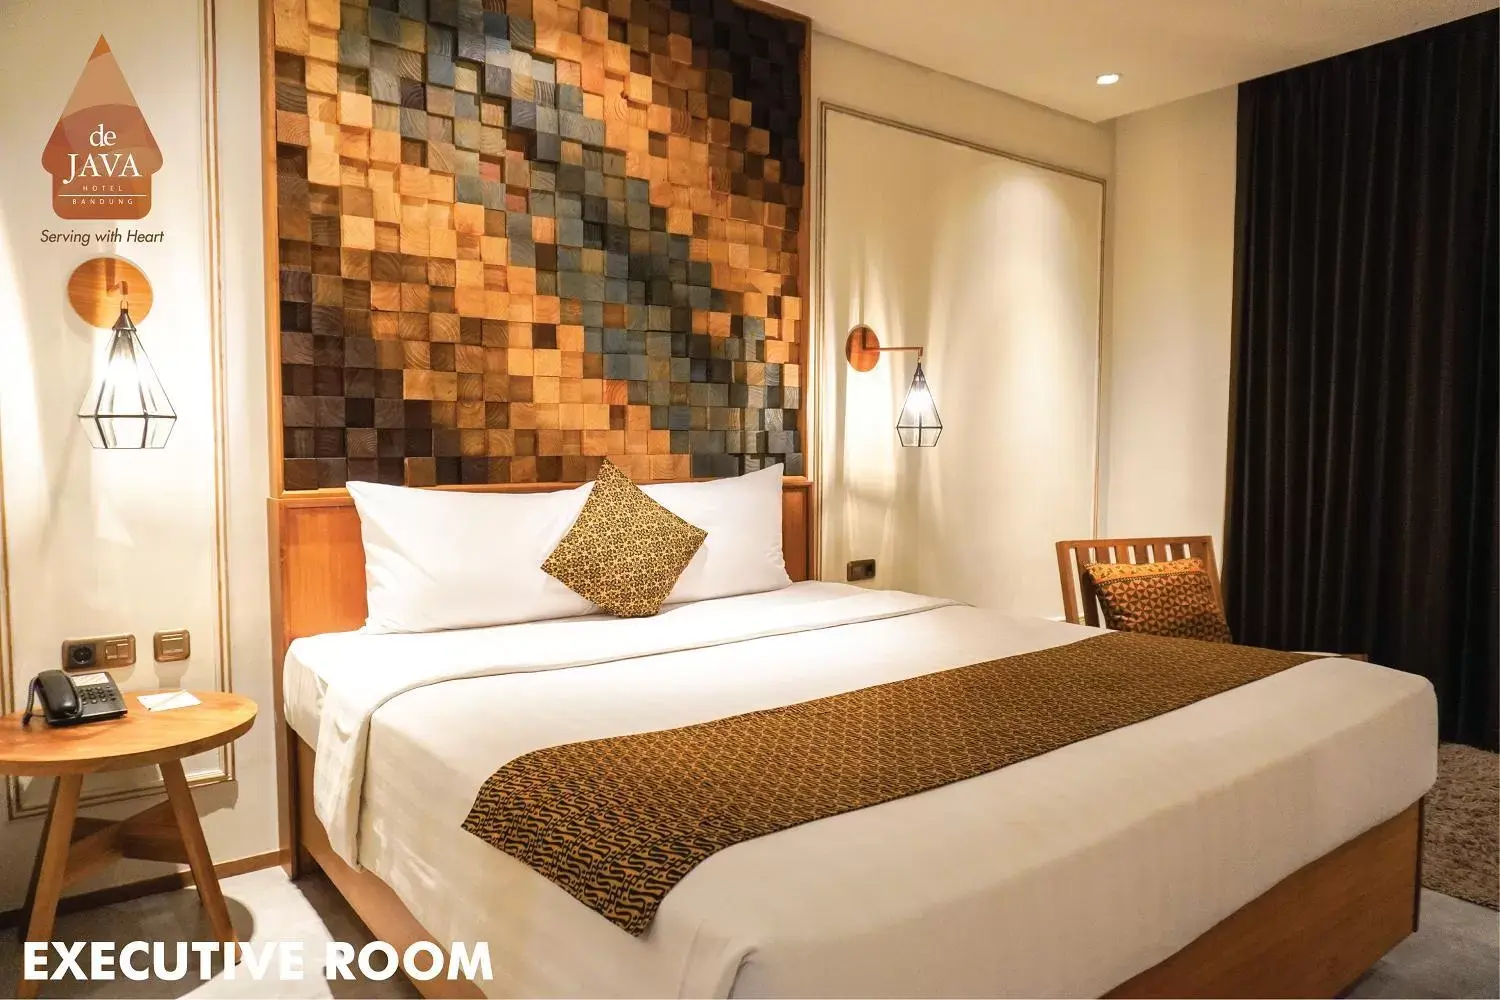 Bedroom, Bed in de JAVA Hotel Bandung